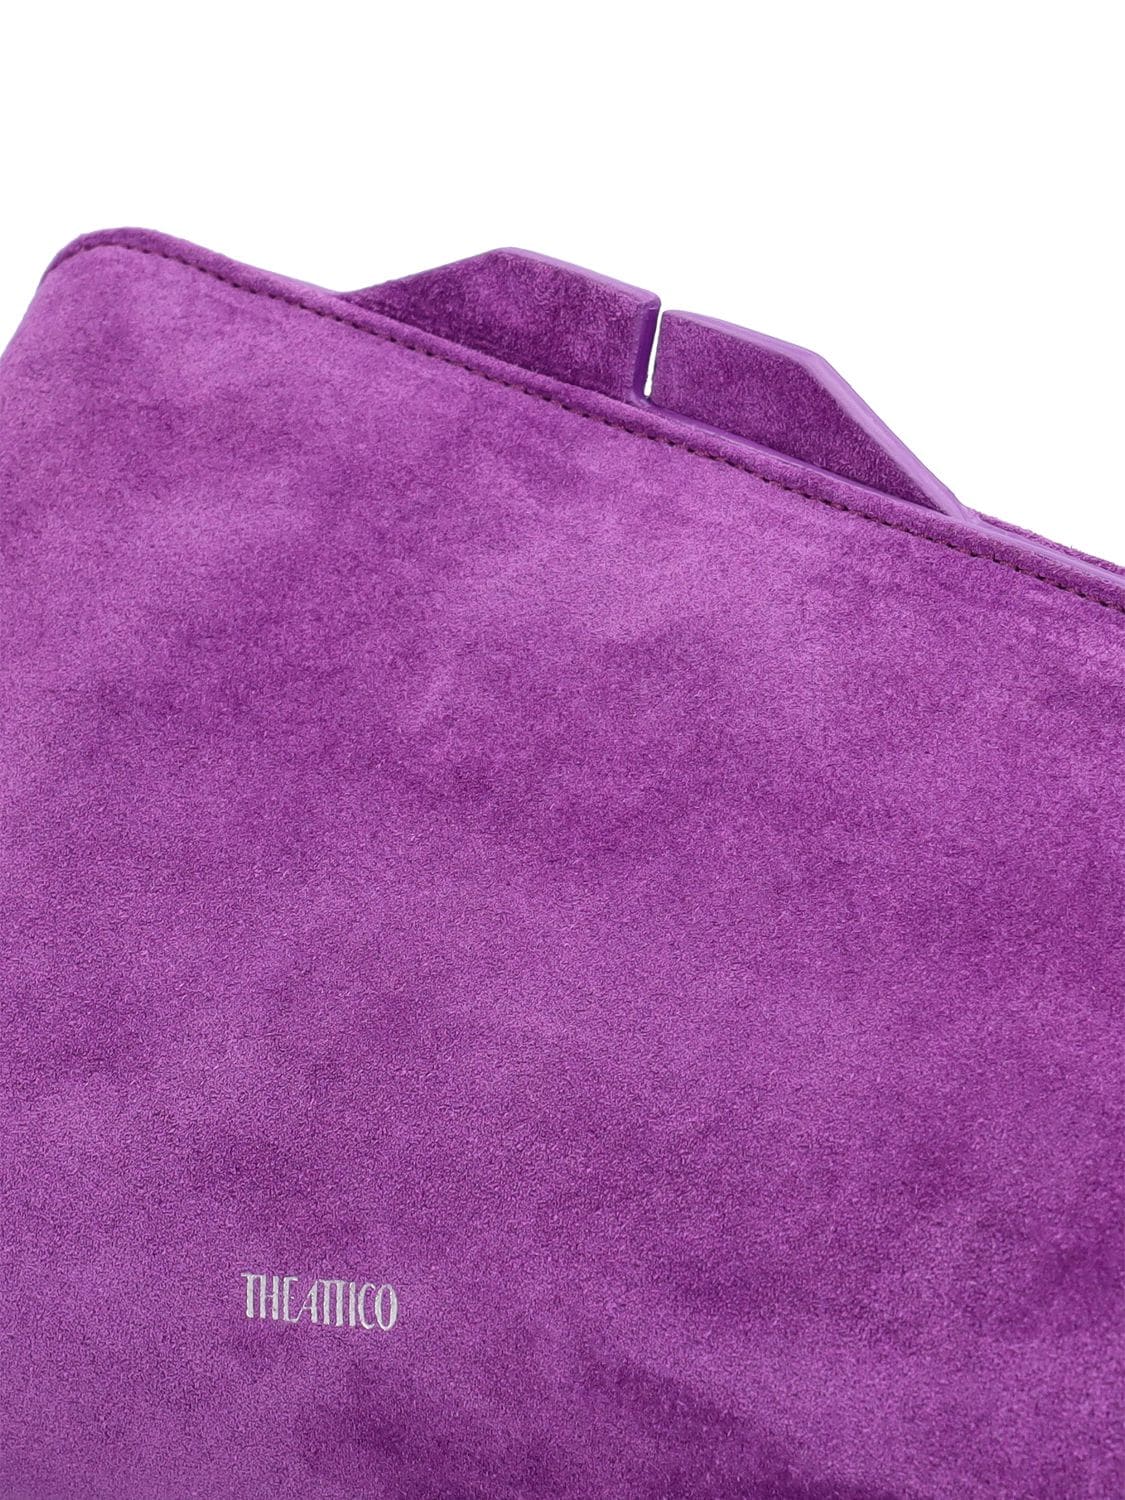 Shop Attico 8:30 Pm Leather Clutch In Purple